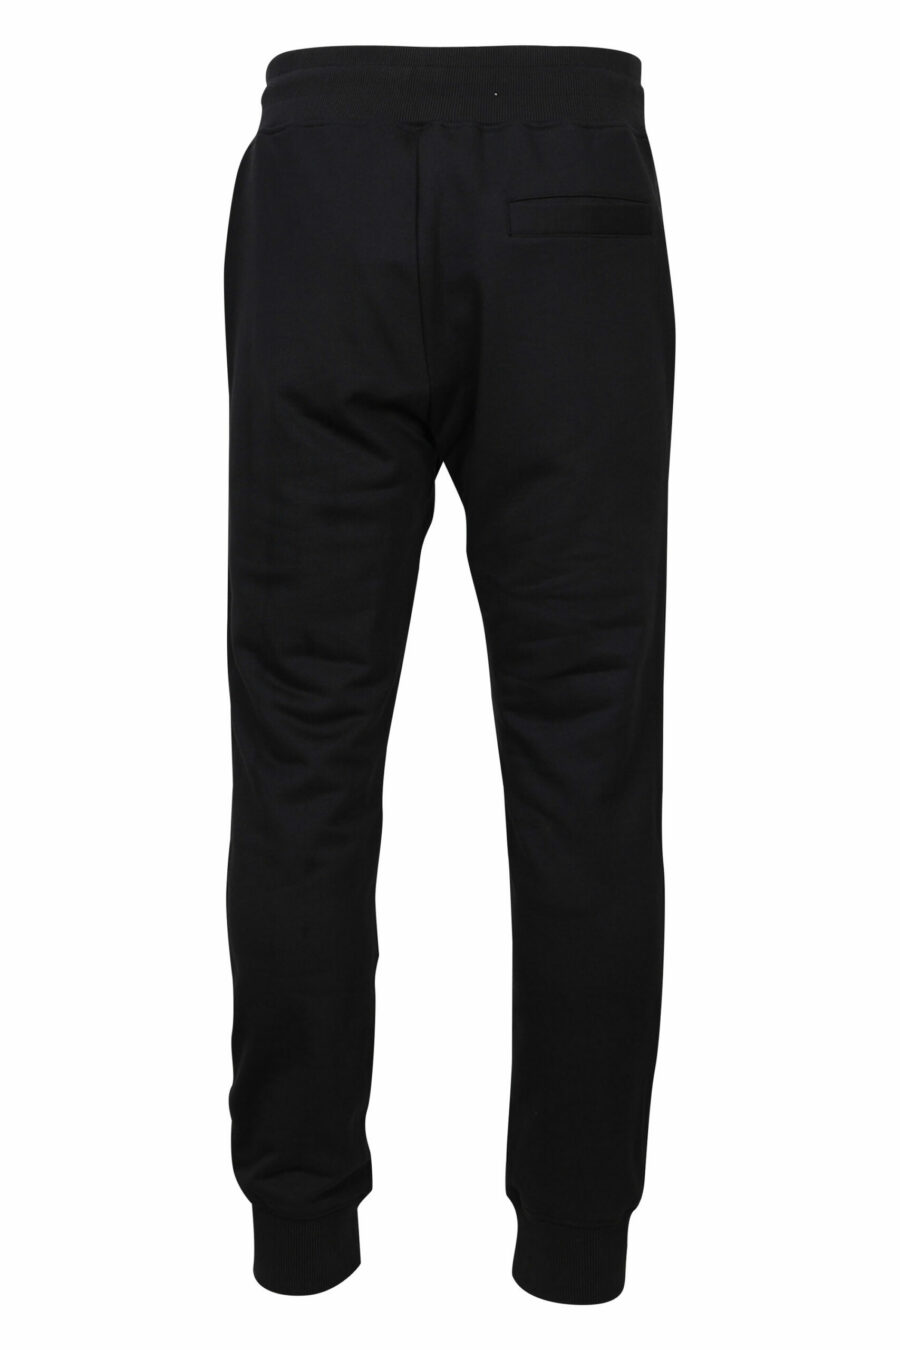 Pantalón de chándal negro con minilogo "piece number" - 8052019467178 2 scaled